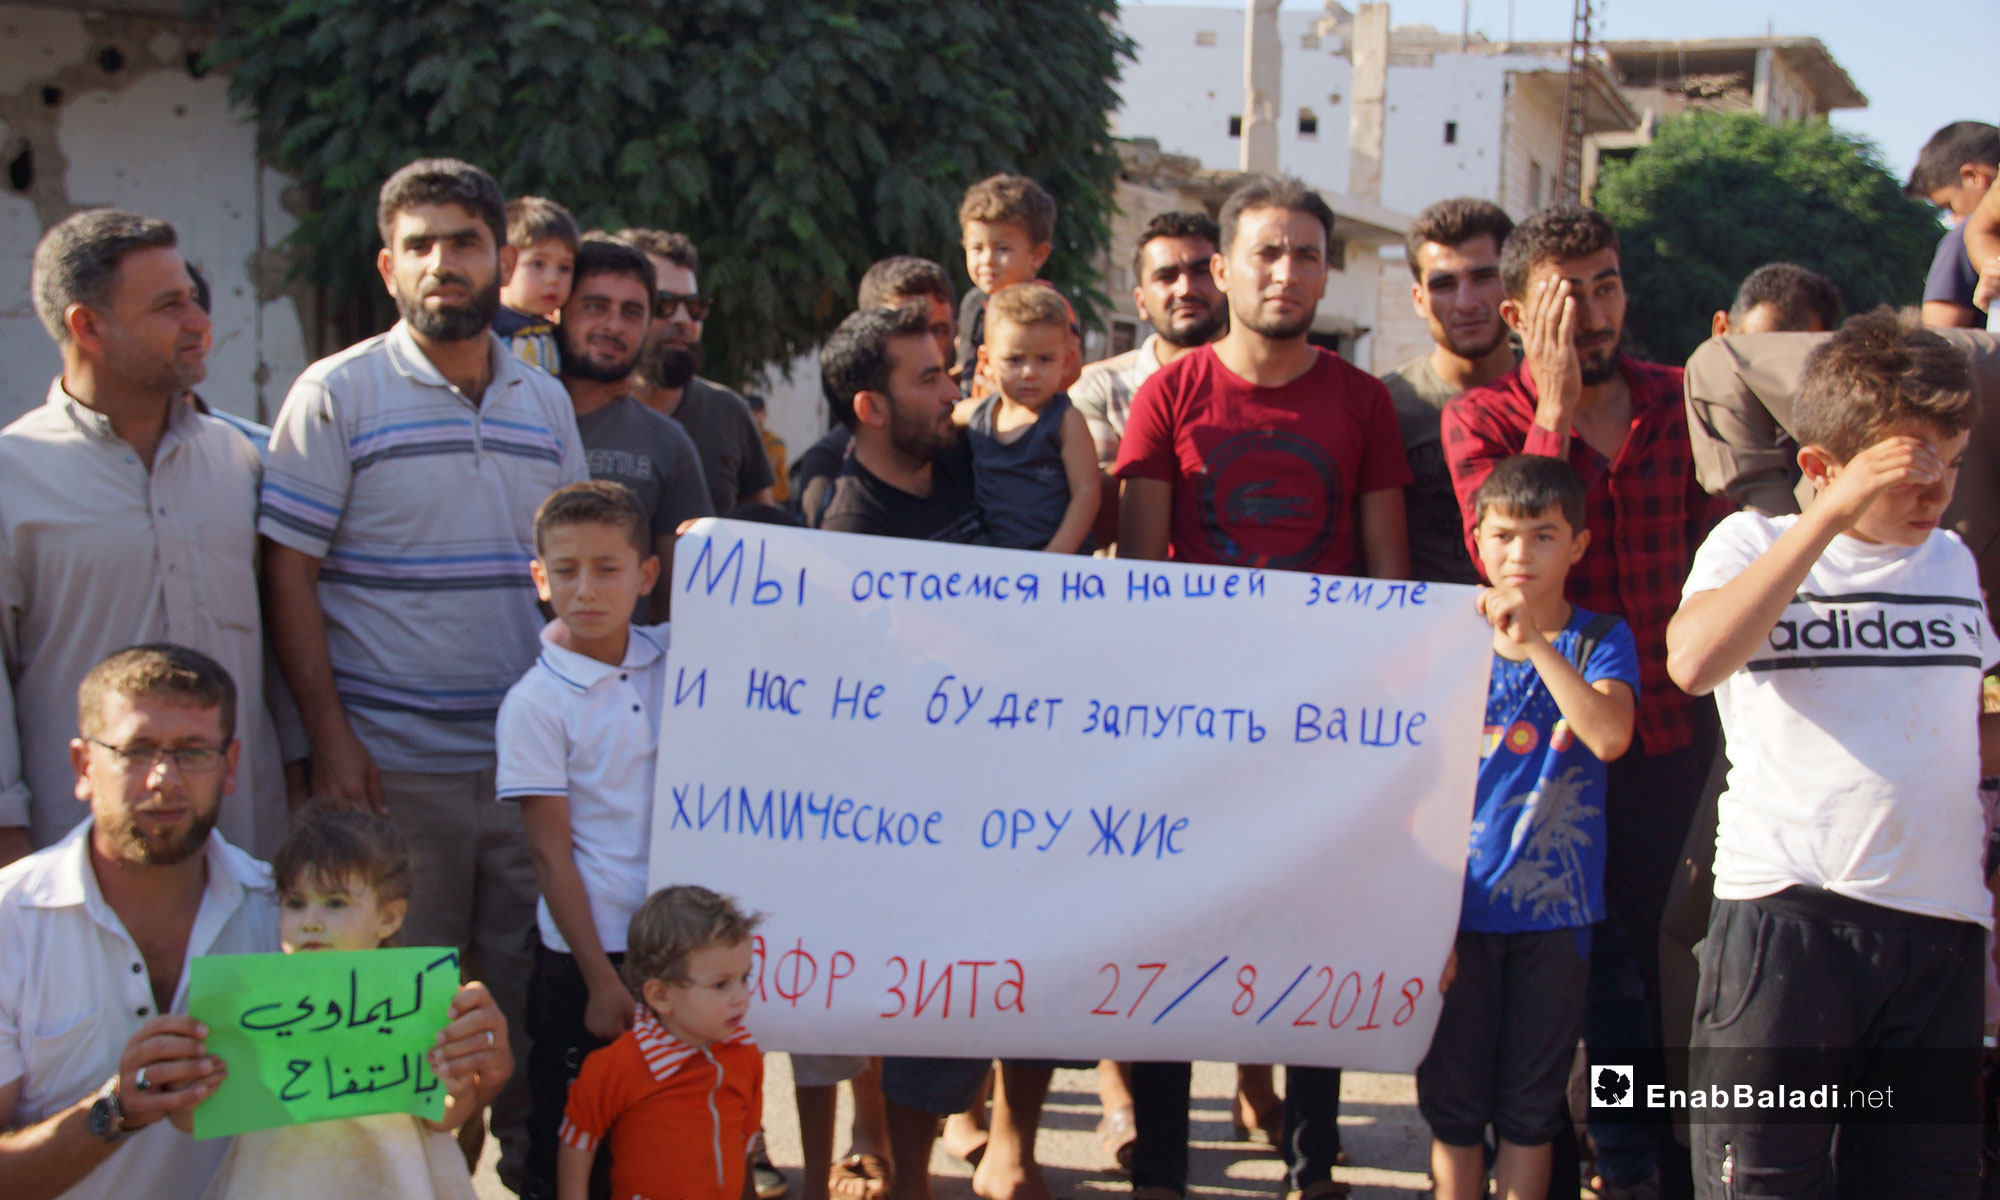 مظاهرة في كفر زيتا ردًا على الادعاءات الروسية بأن المدينة خالية من سكانها - 27 من آب 2018 (عنب بلدي)